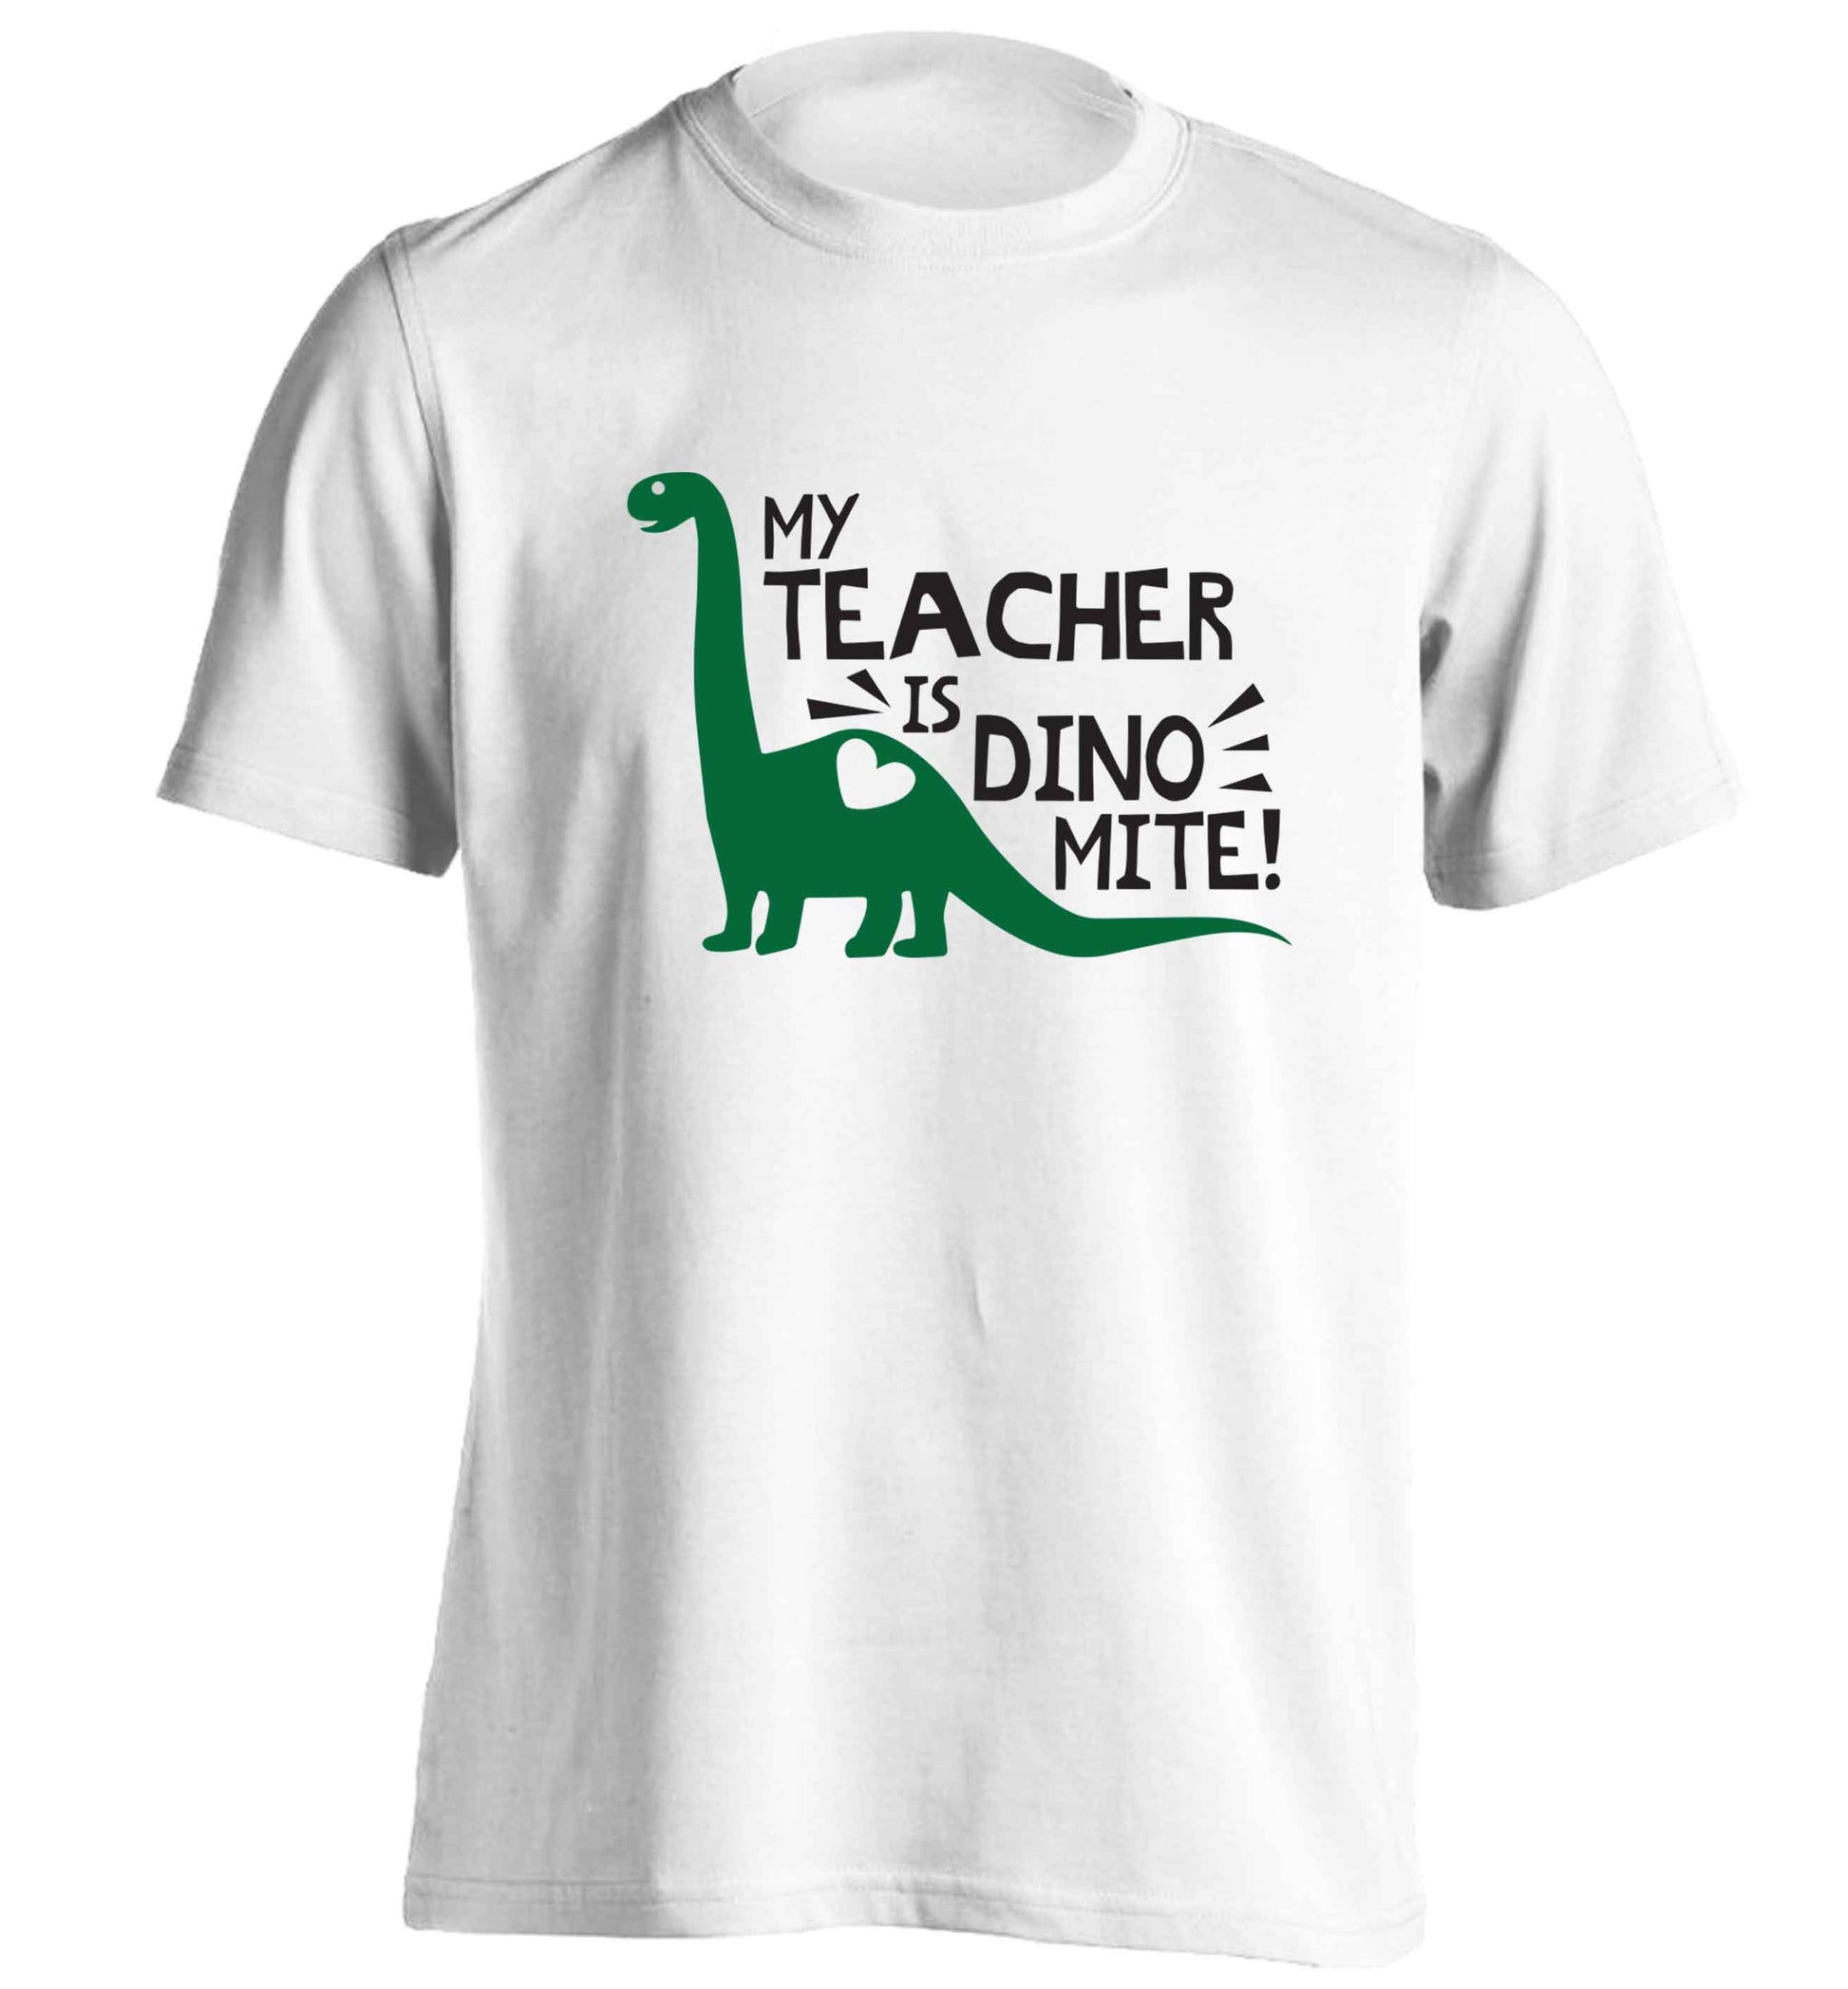 My teacher is dinomite! adults unisex white Tshirt 2XL